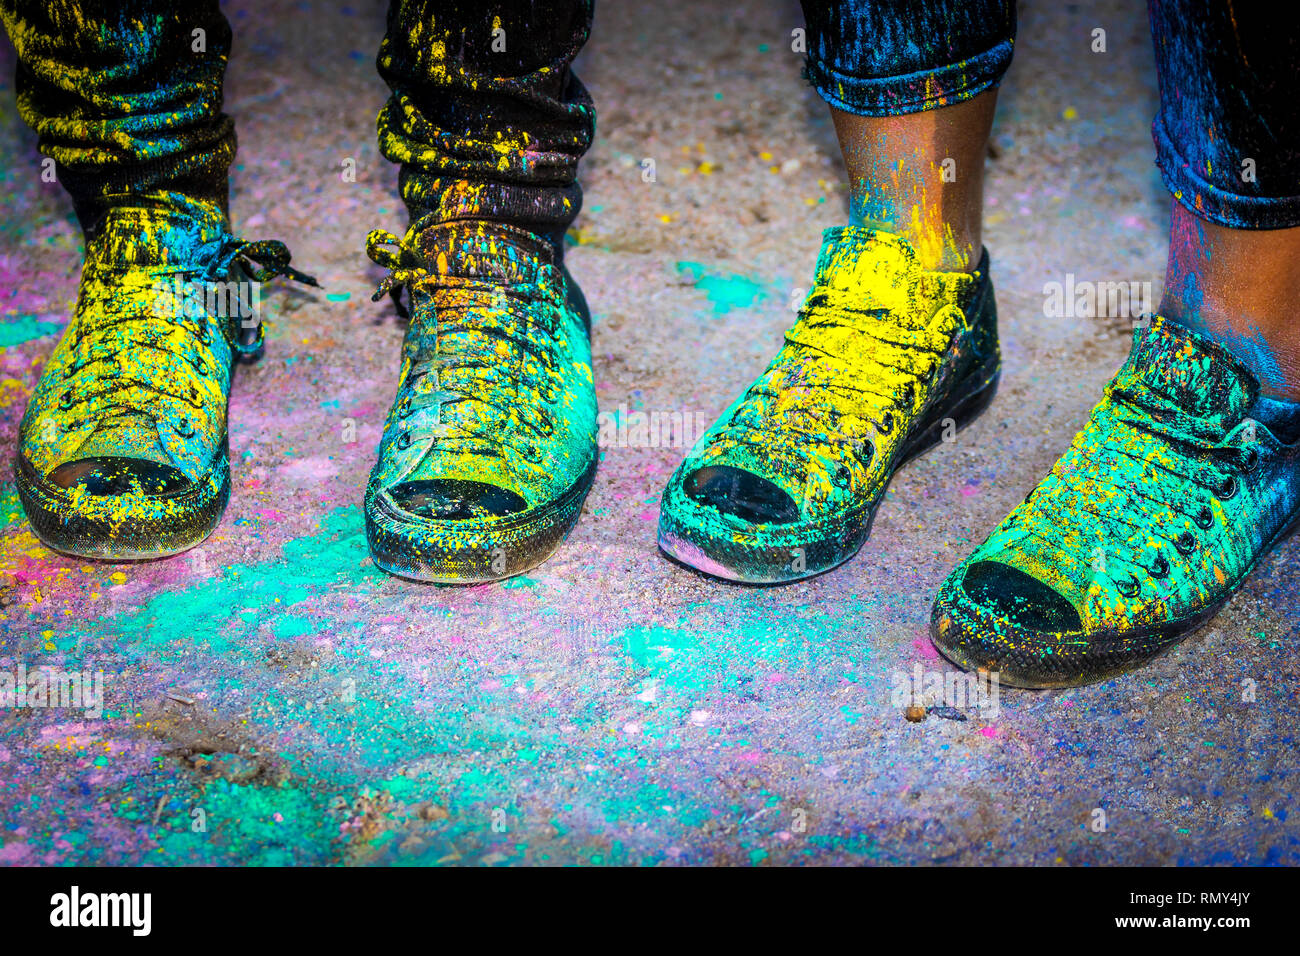 Chaussures de course noir recouvert de peinture en poudre de couleur Banque D'Images